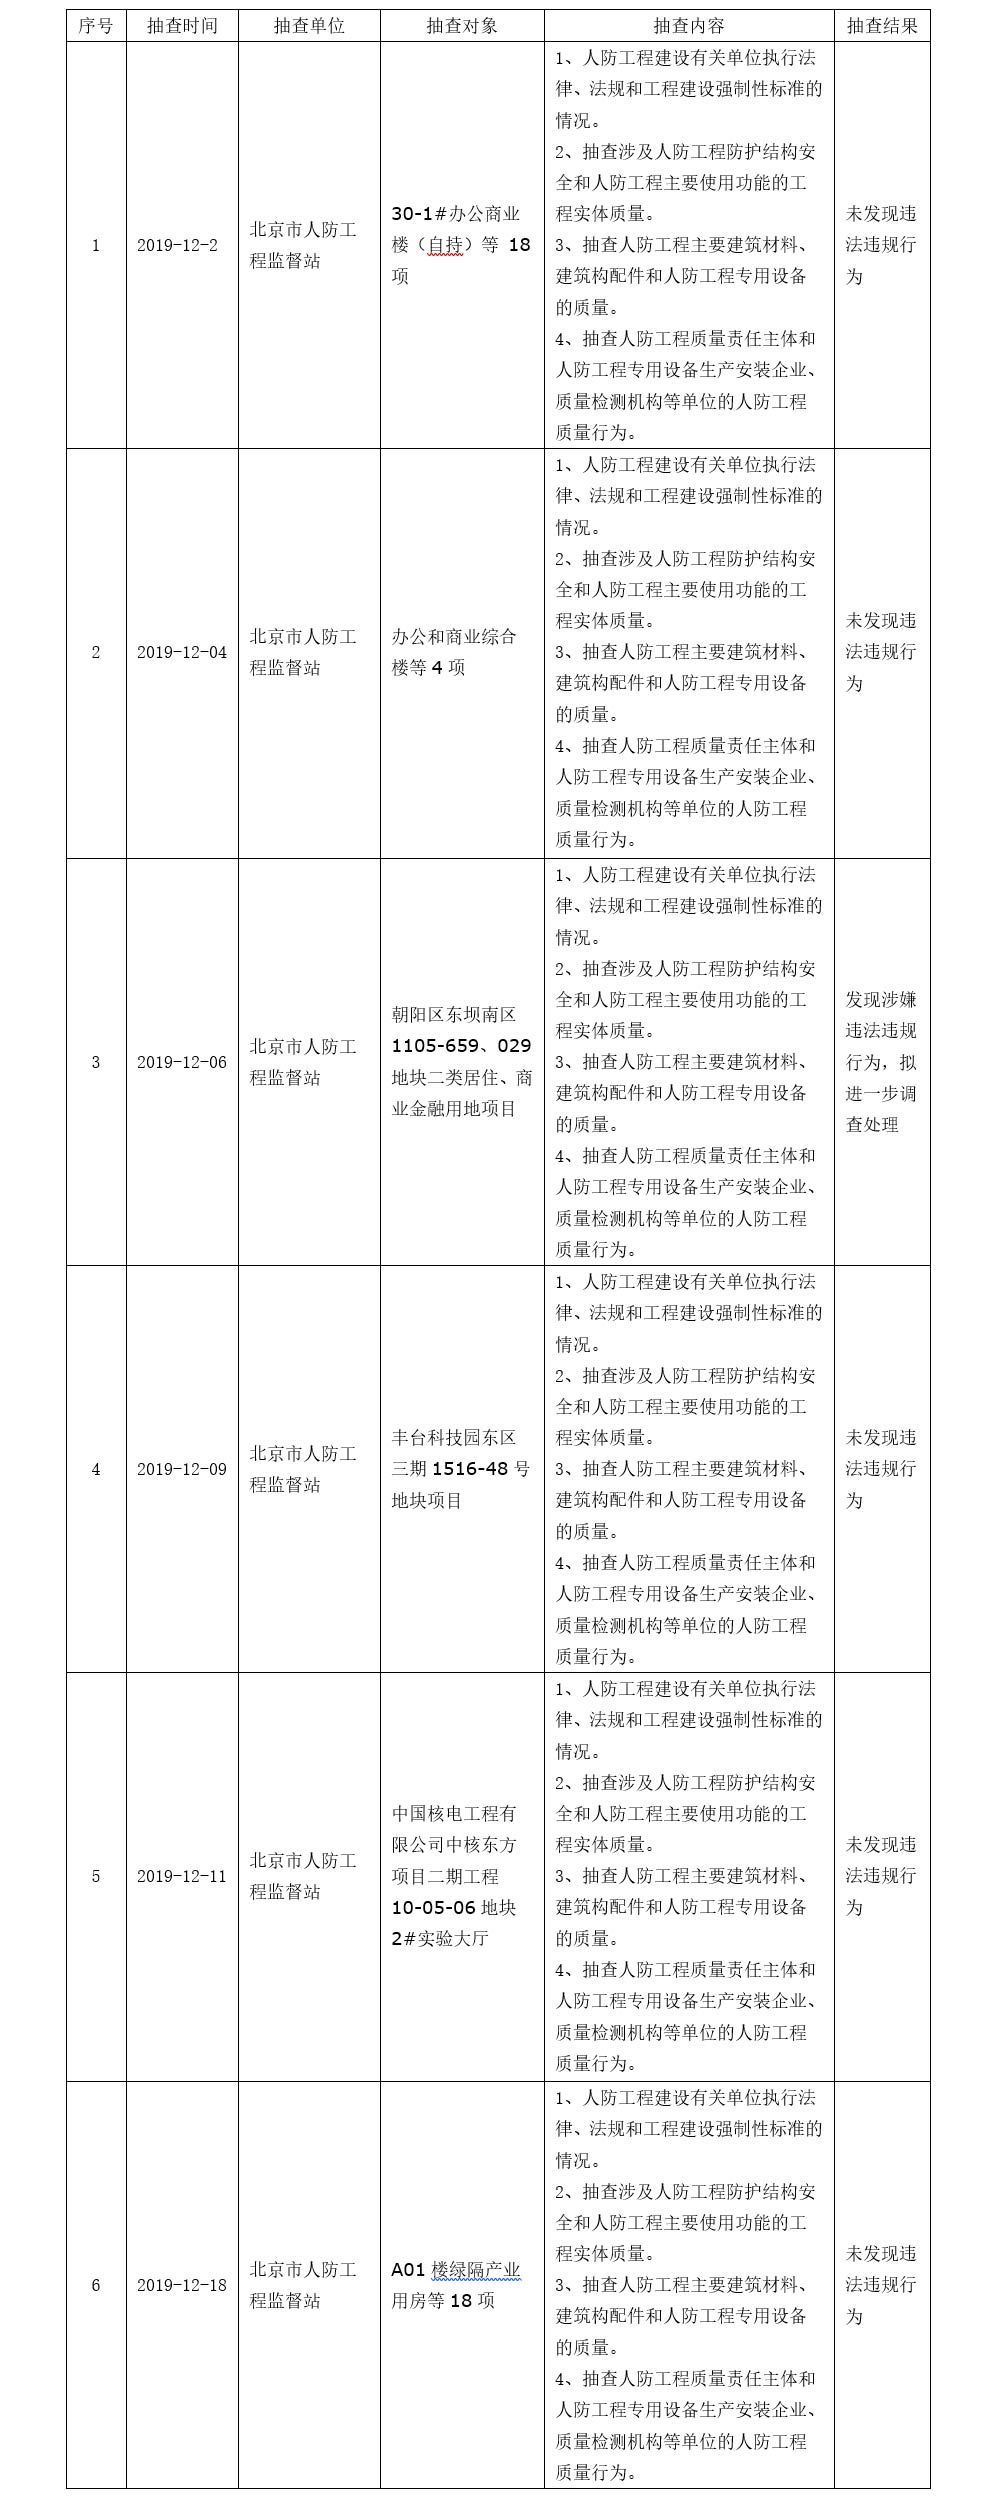 2019年12月北京市人民防空办公室关于人防工程质量监督的双随机抽查公示信息